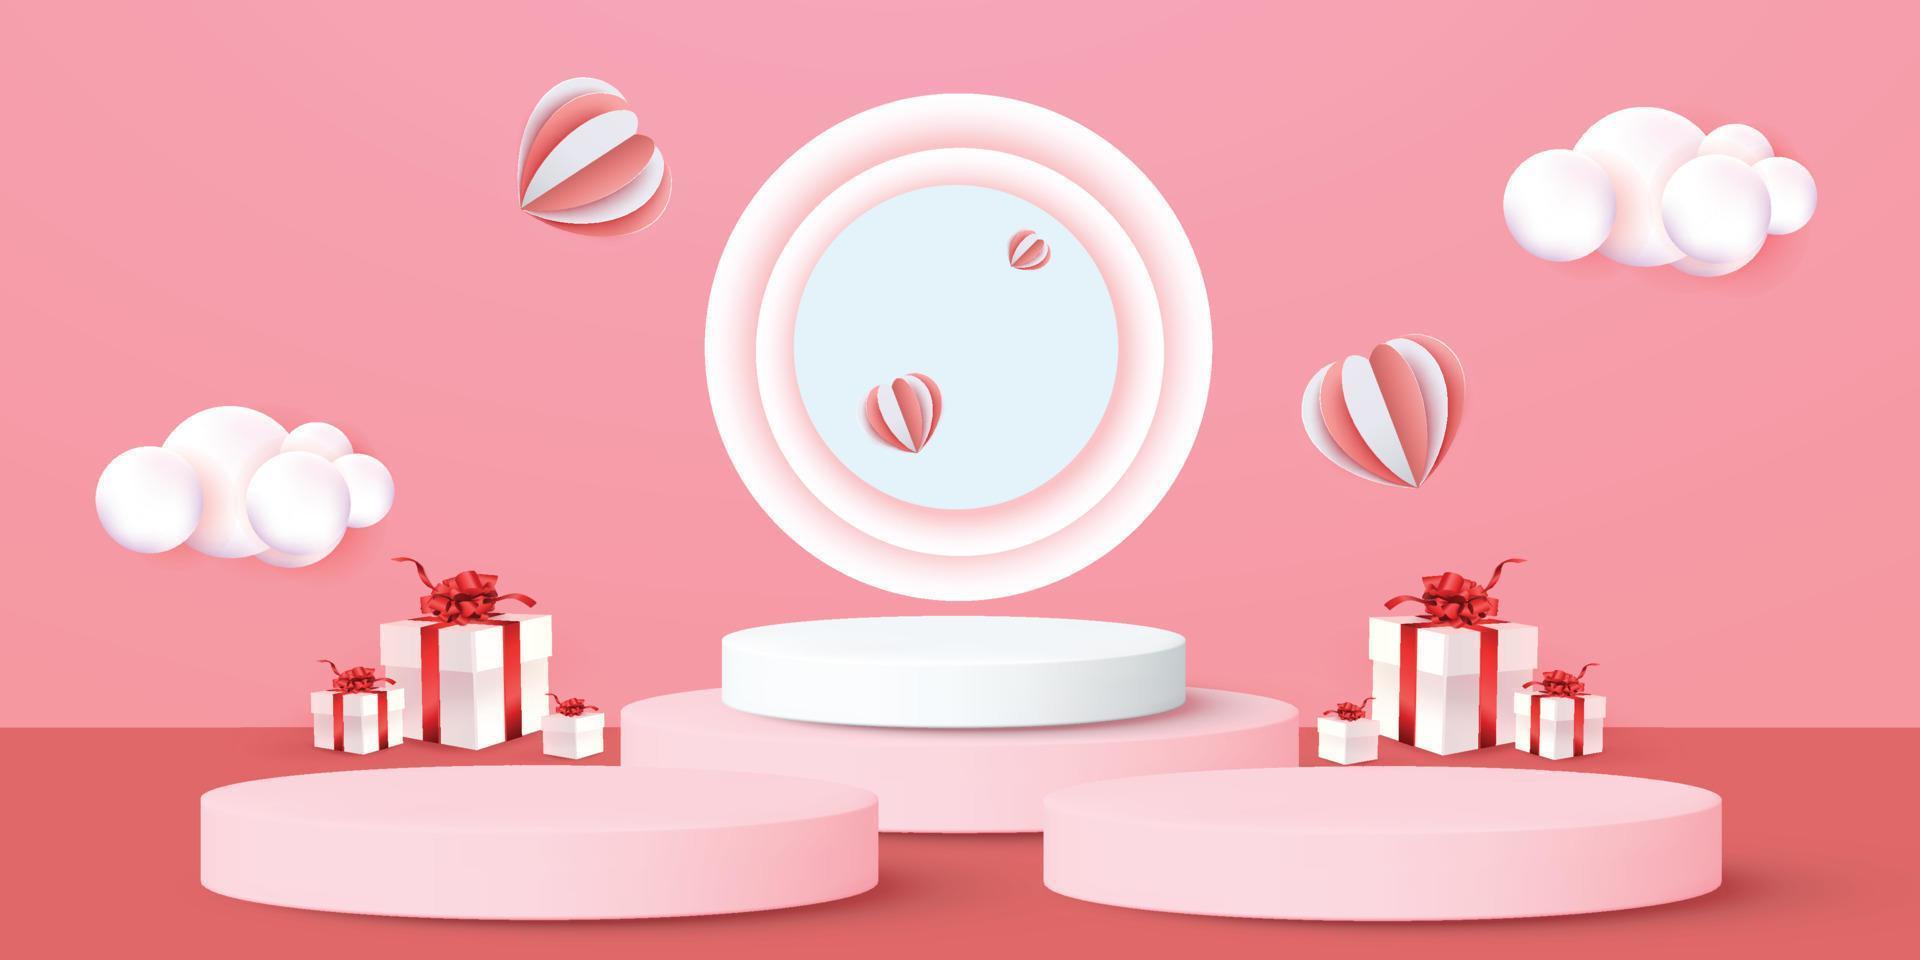 Fond de produit rouge podium 3D pour valentine.pink et coeur amour romance concept design vecteur illustation décoration bannière